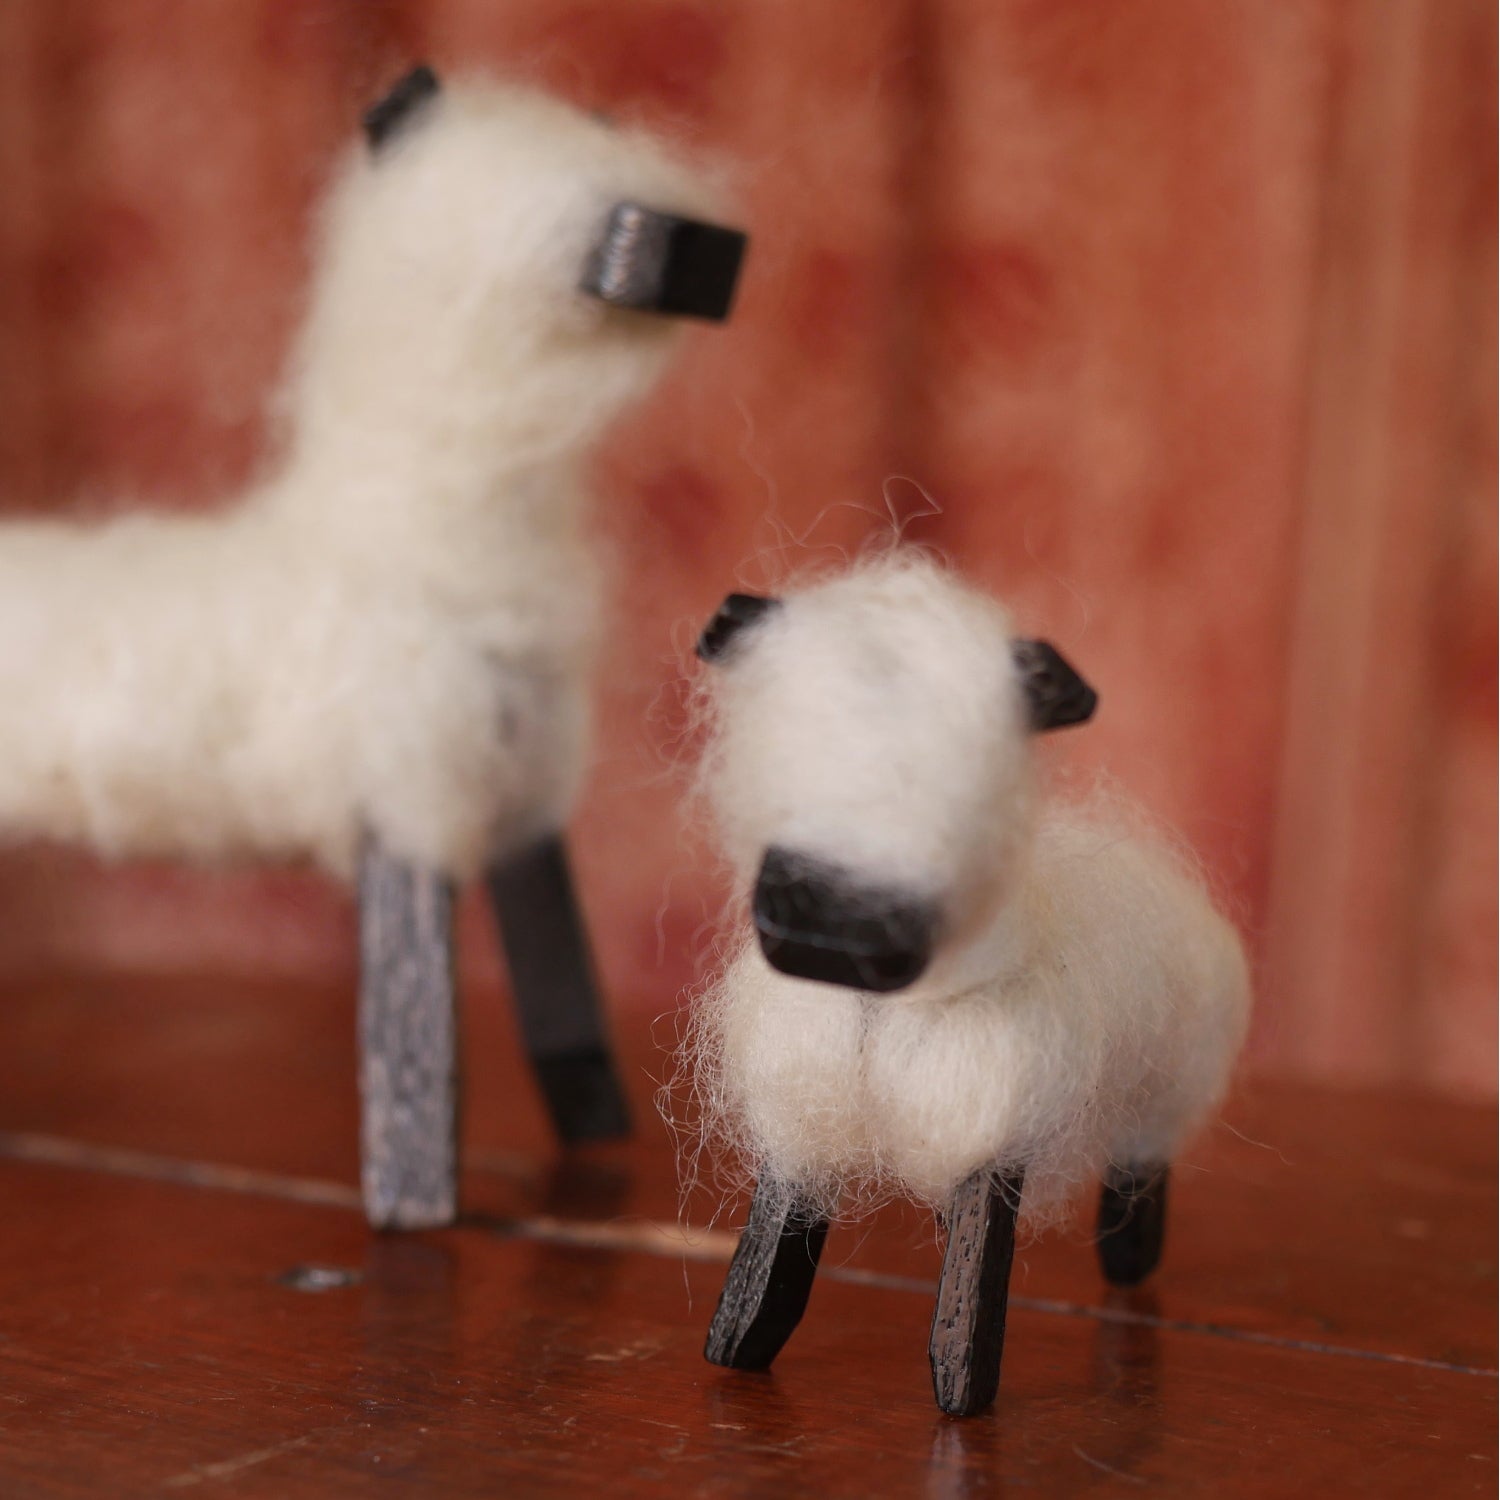 Wool Roving ~ Perendale lambs' wool